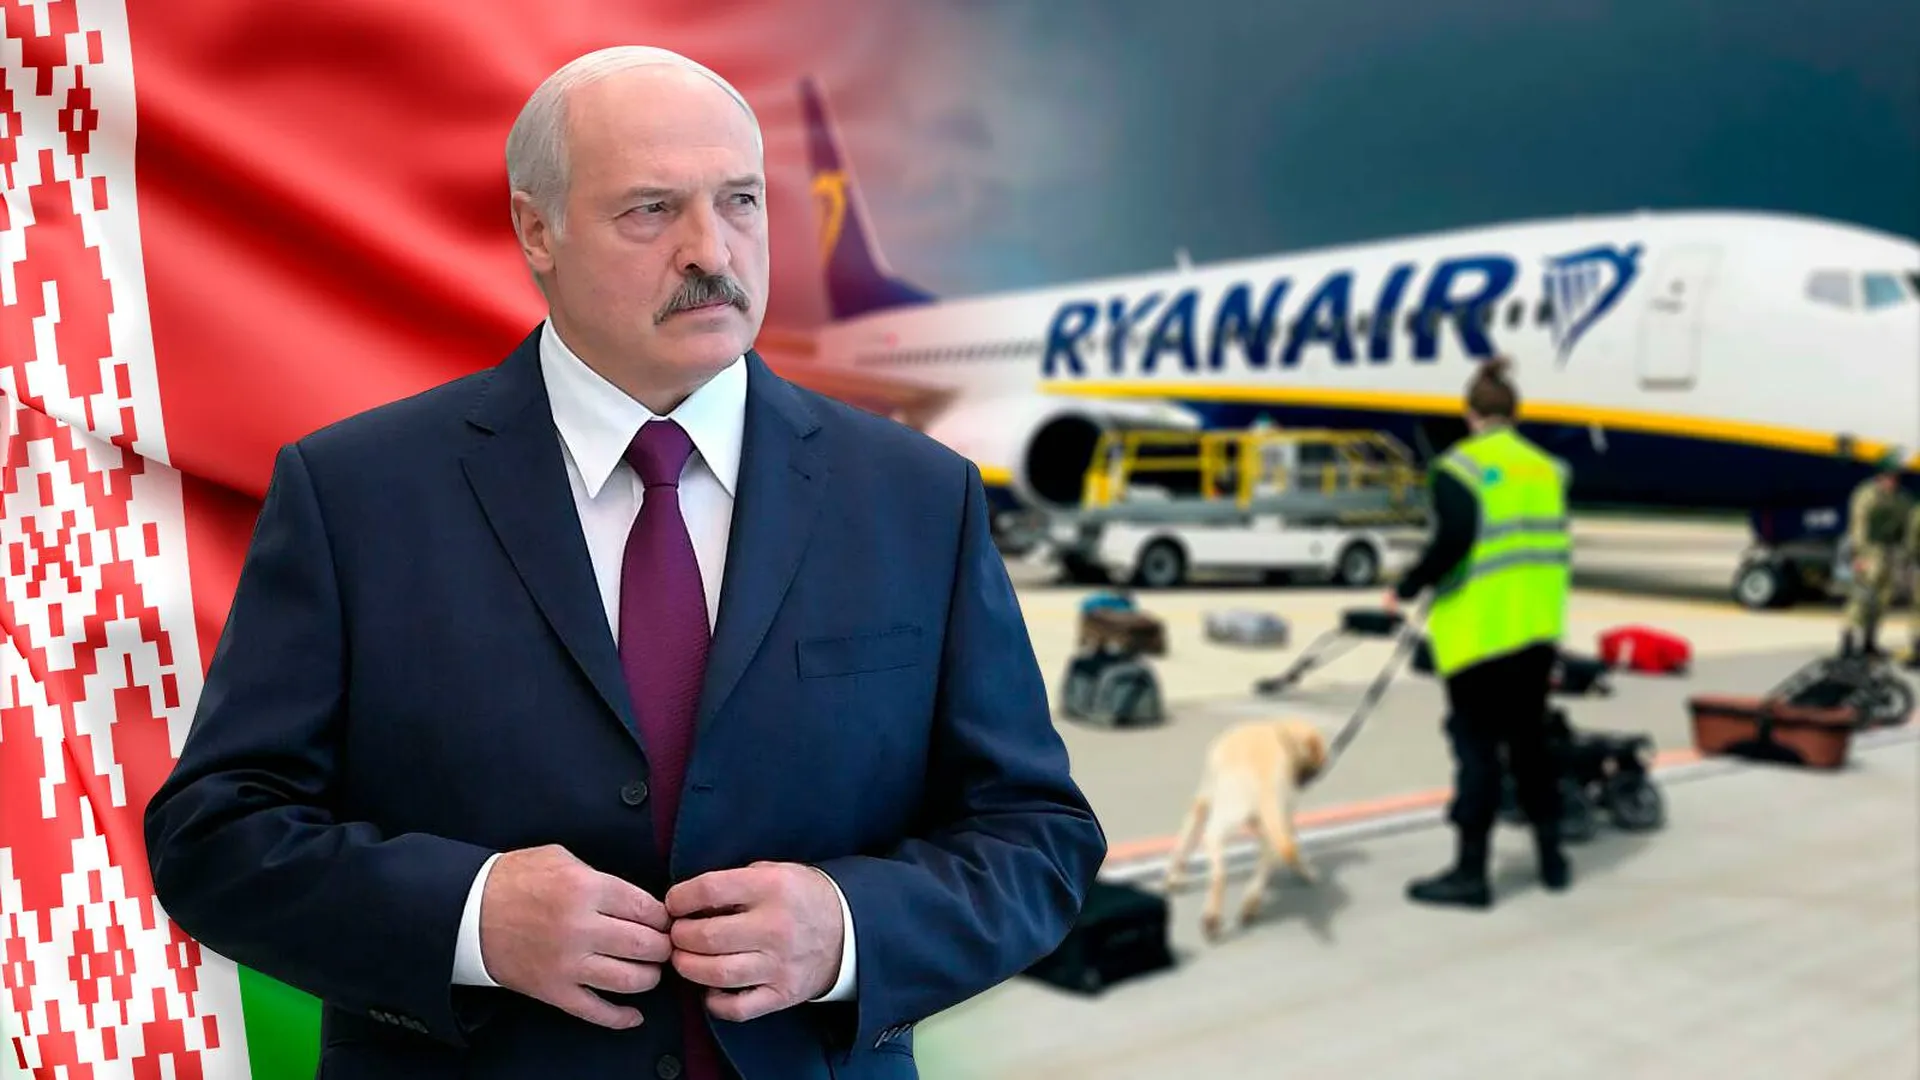 Эмоции и намек на Россию. Политологи разобрали речь Лукашенко о посадке самолета в Минске